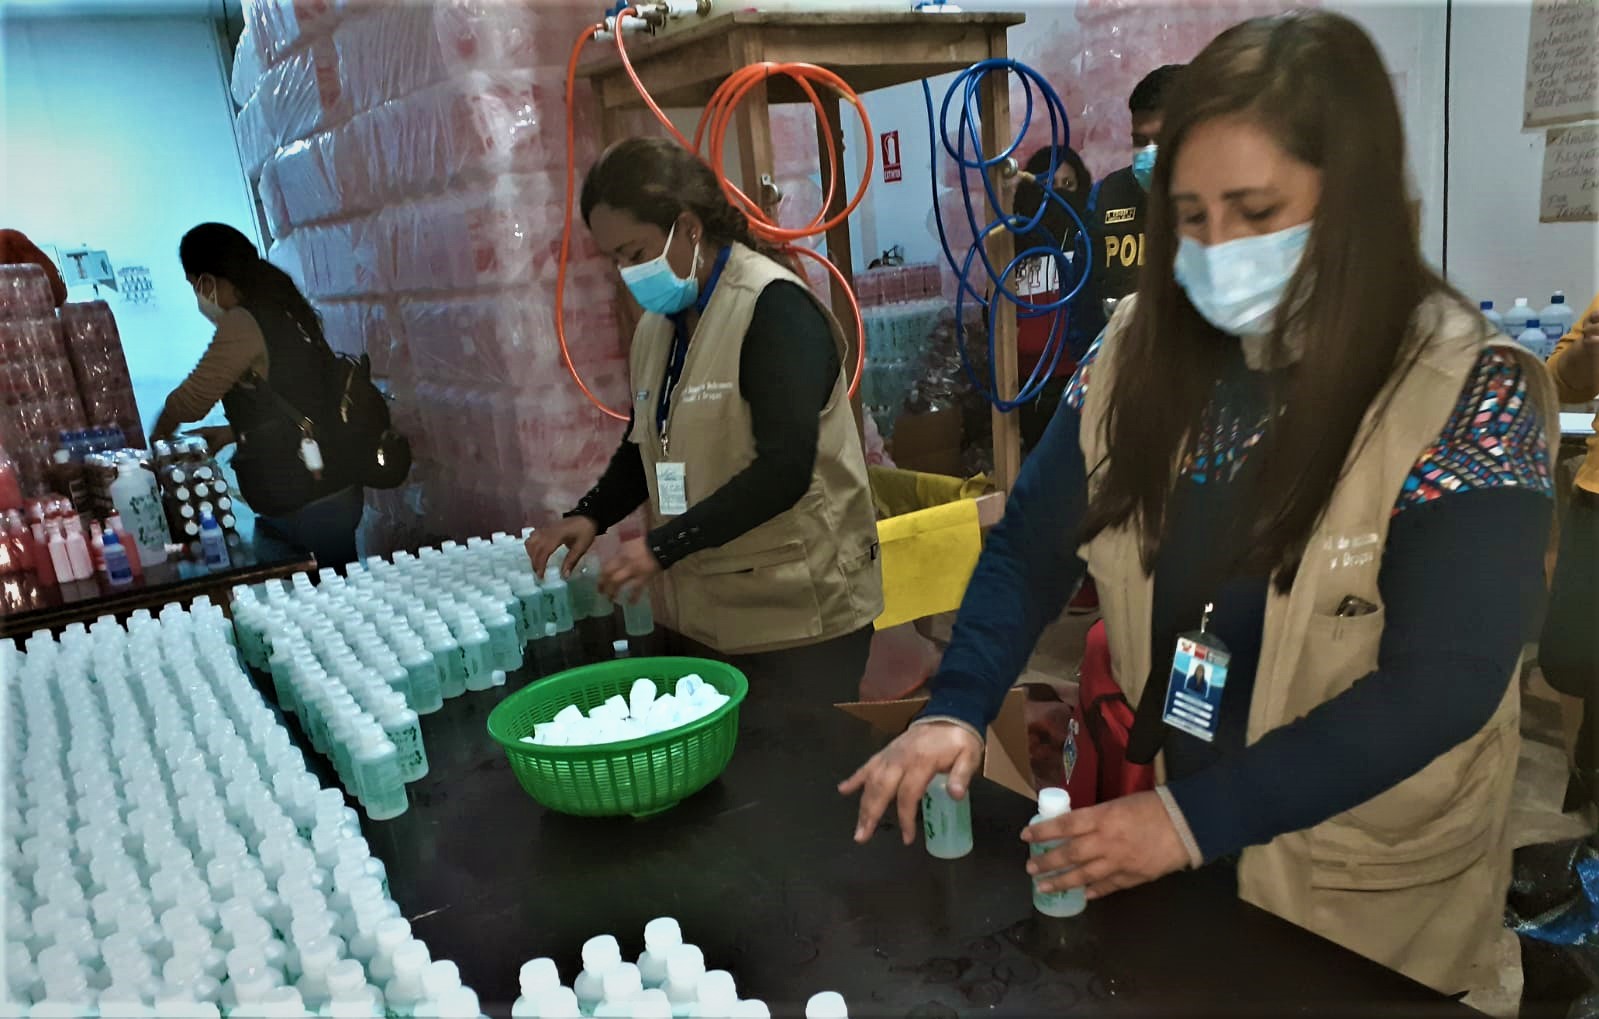 Minsa: Incautan 300 kilos de alcohol, timolina y agua oxigenada en laboratorio clandestino en San Juan de Lurigancho